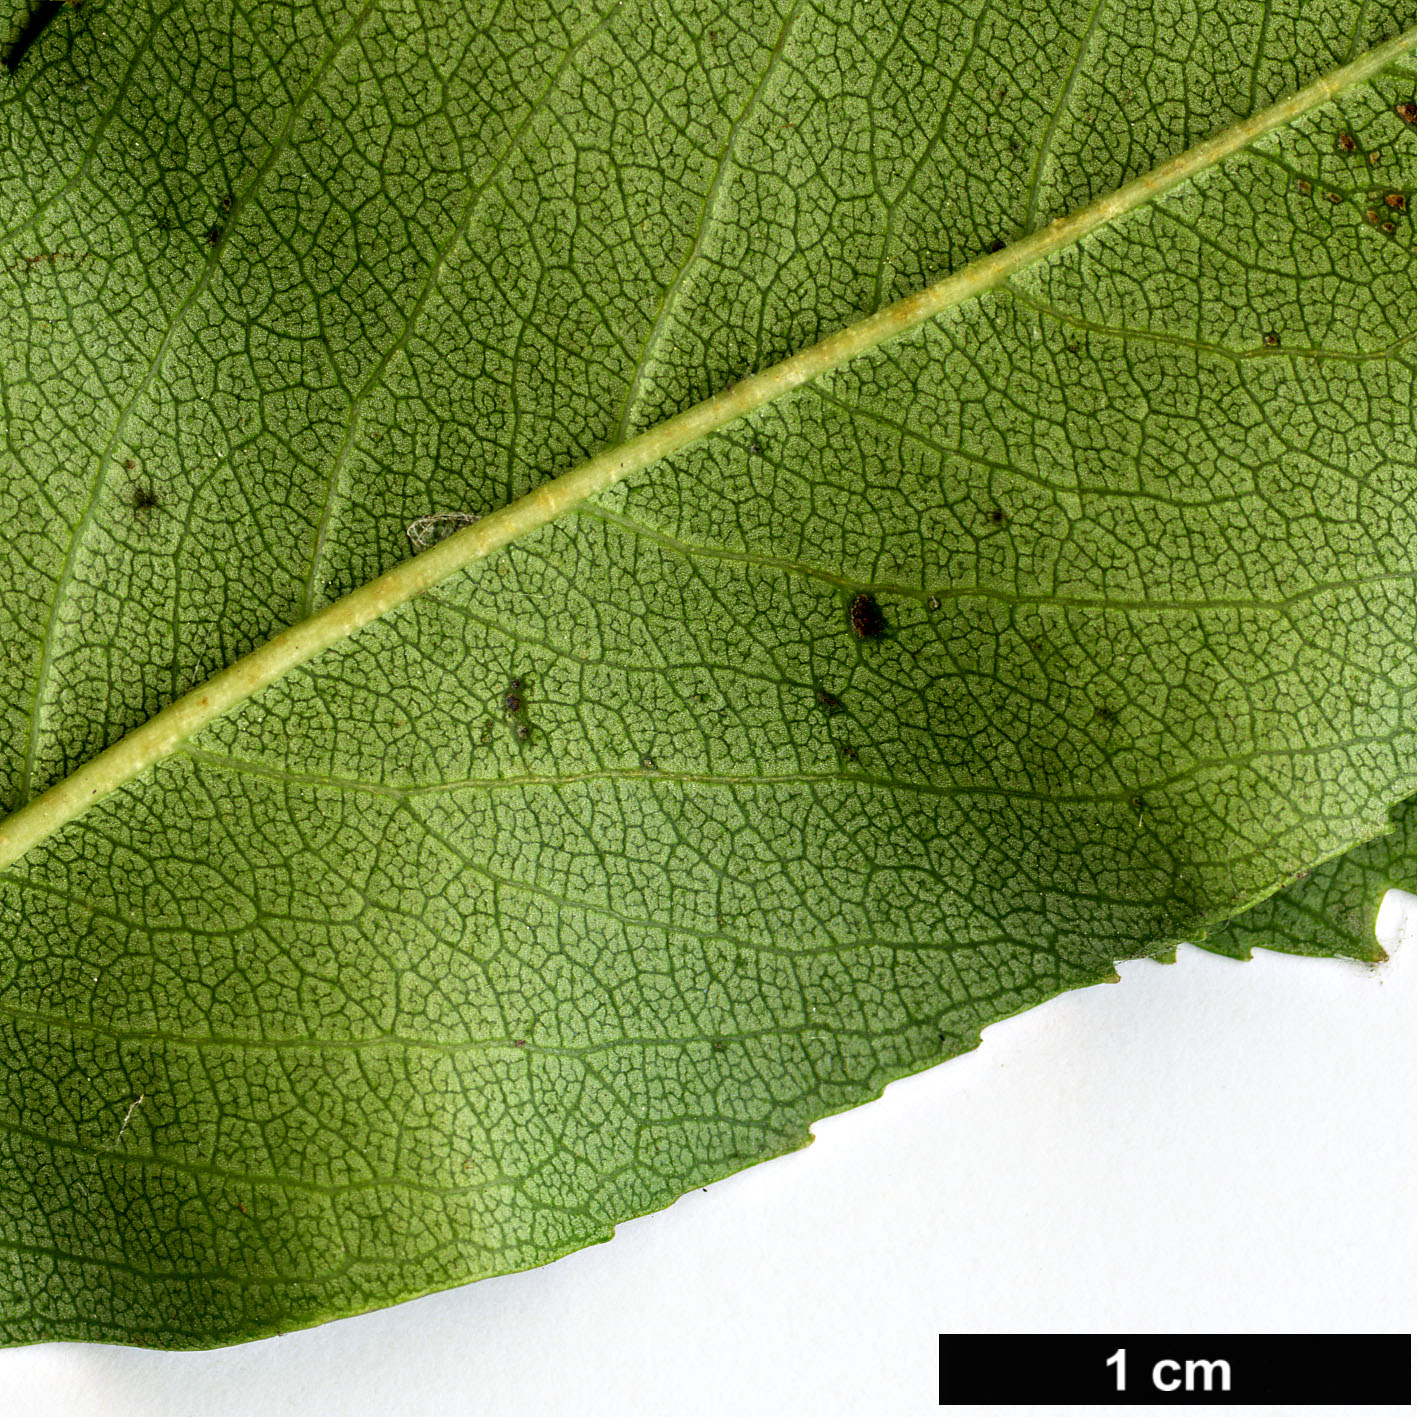 High resolution image: Family: Rosaceae - Genus: Crataegus - Taxon: crus-galli - SpeciesSub: var. pyracanthifolia